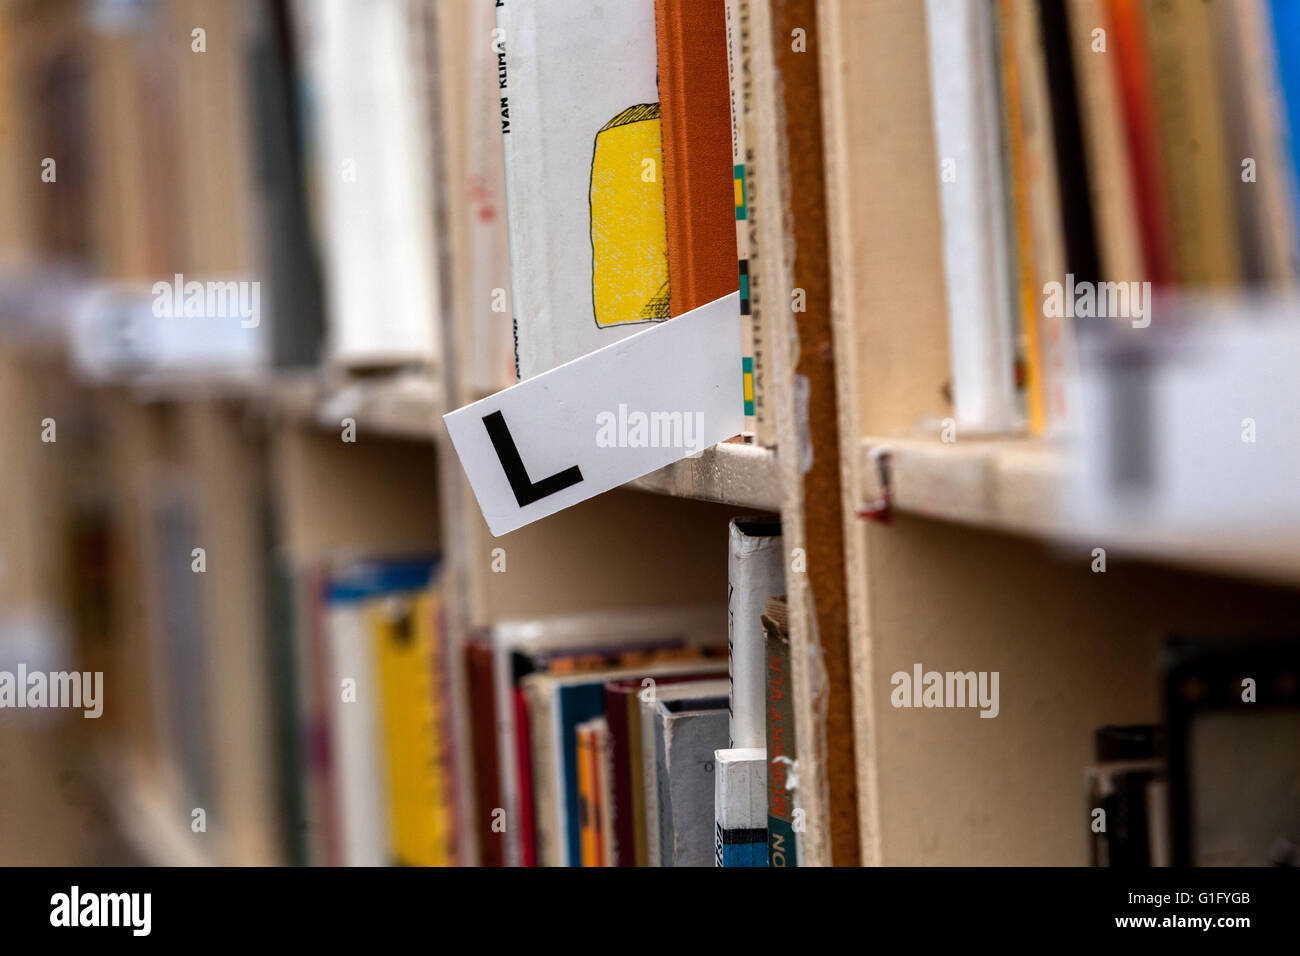 Tri alphabétique des livres placés sur les étagères, livres de bibliothèque sur les étagères Banque D'Images